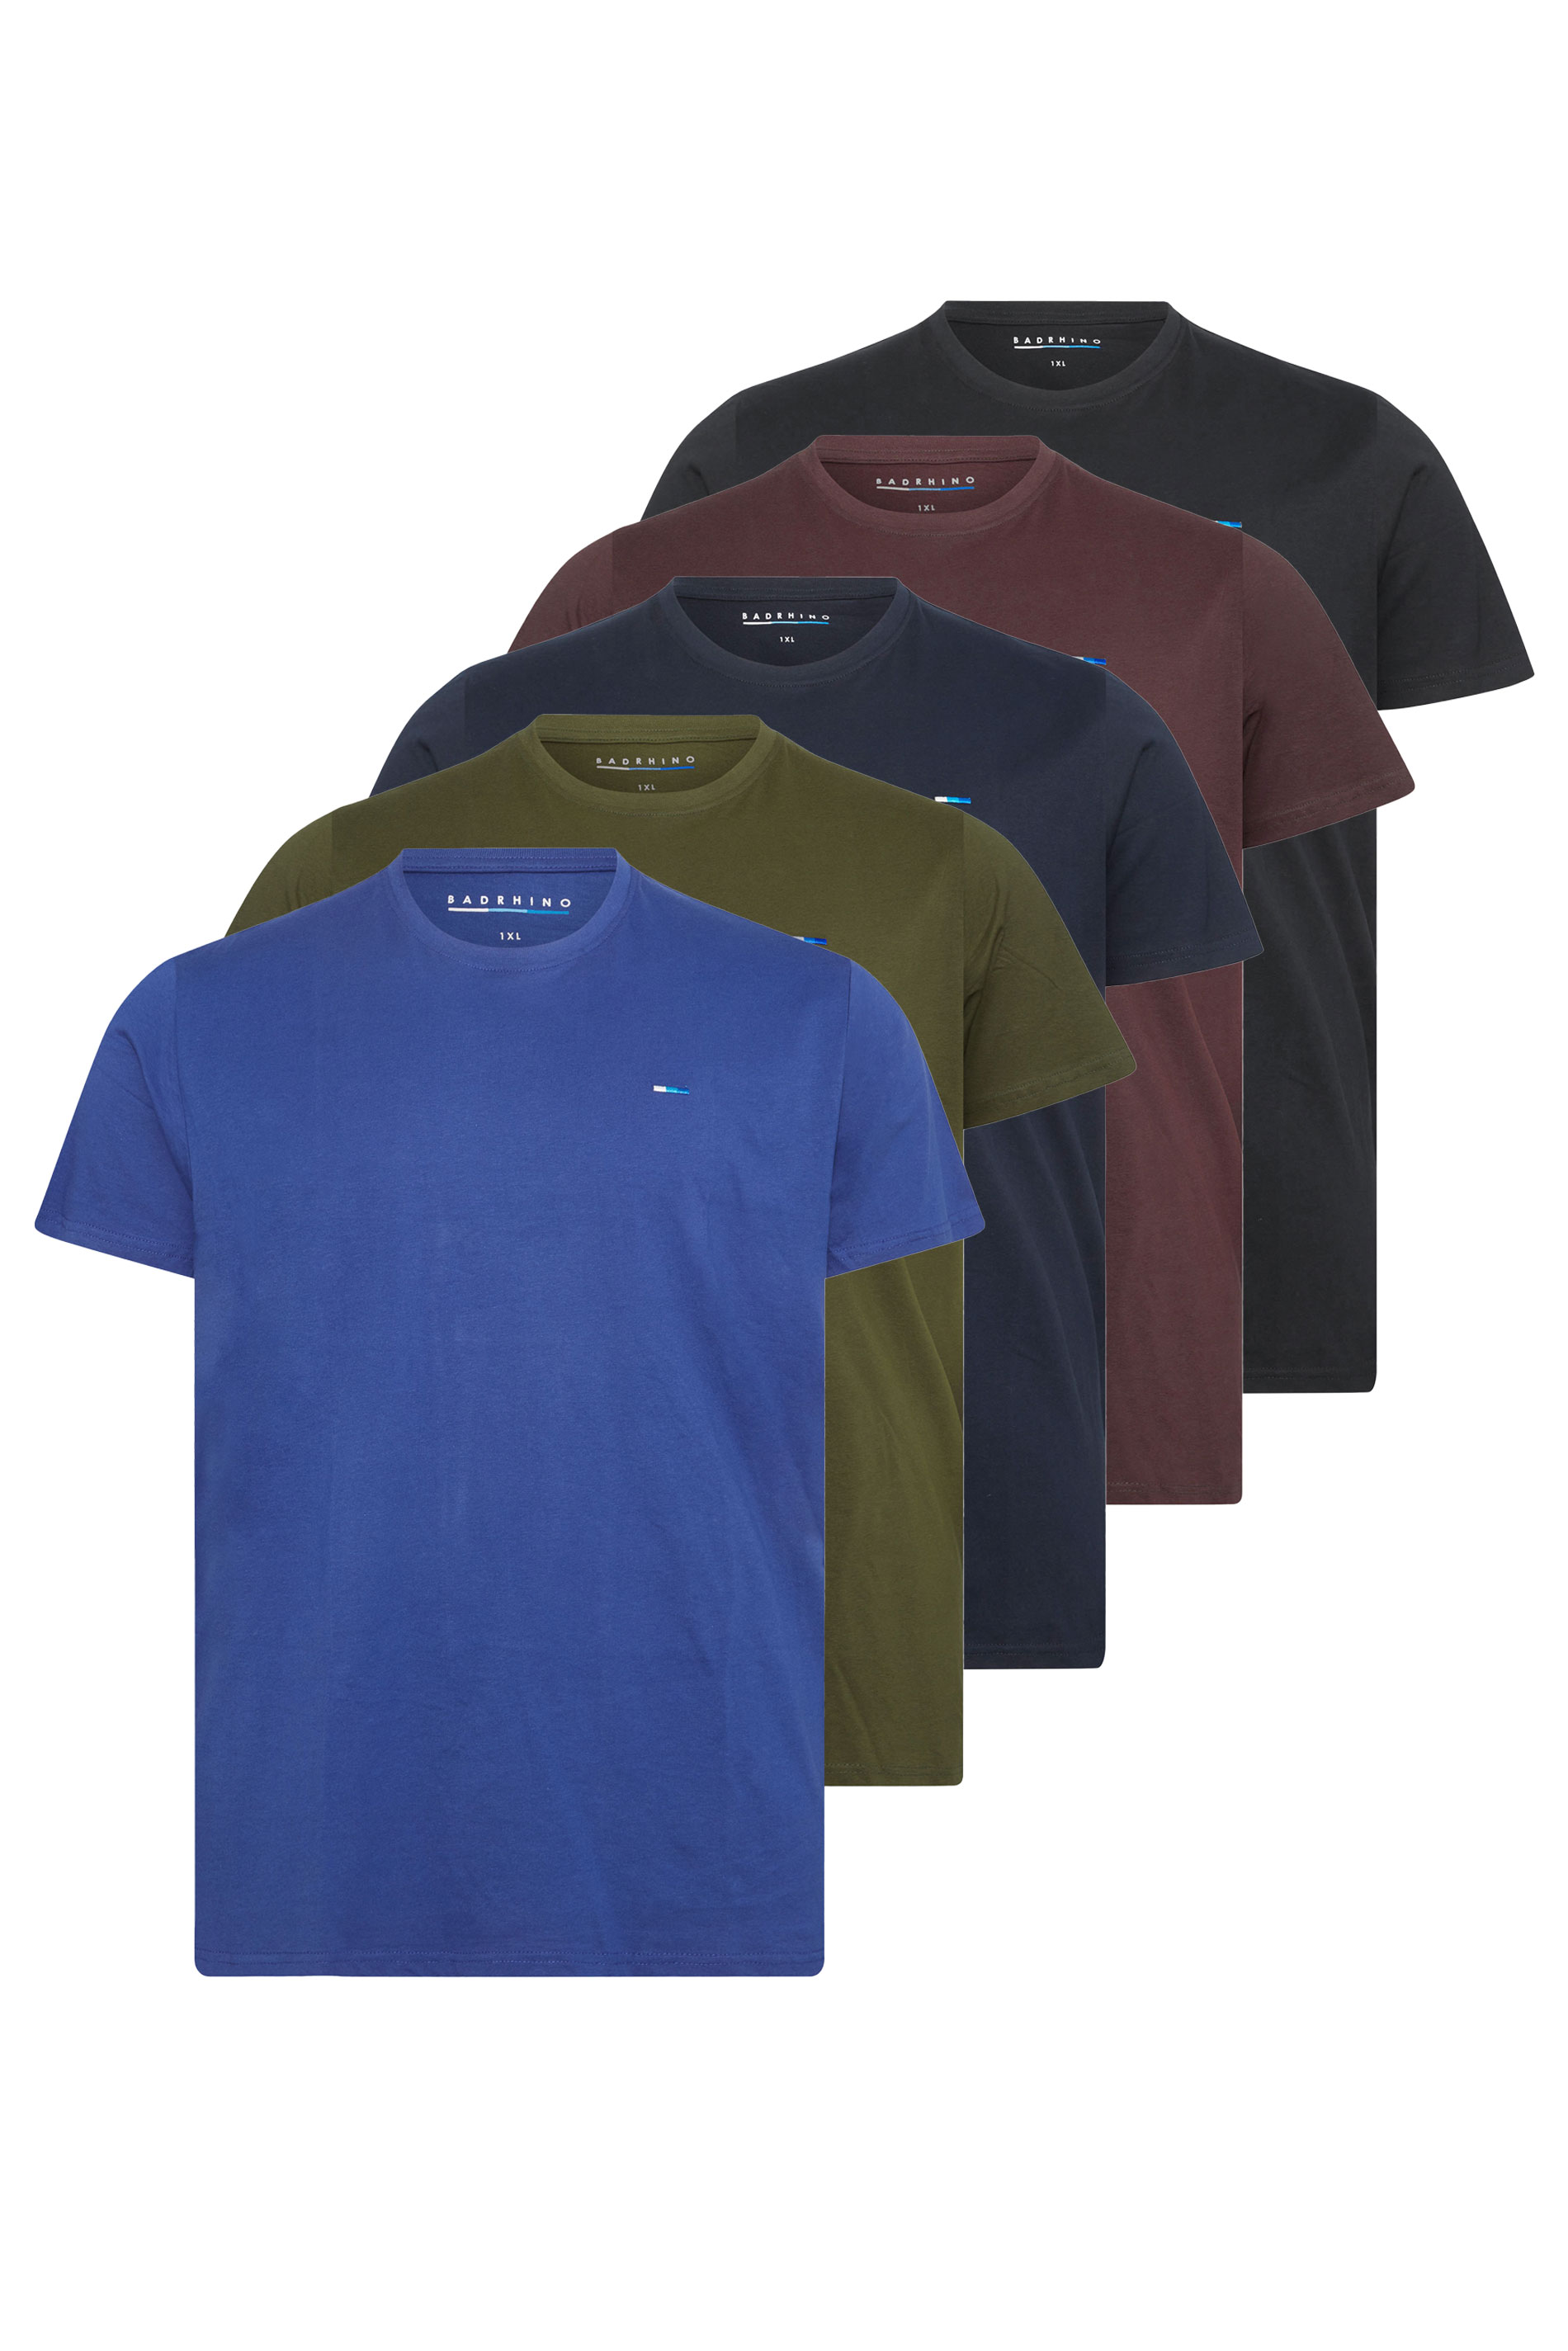 BadRhino 5 Pack Core T-Shirts | BadRhino 2